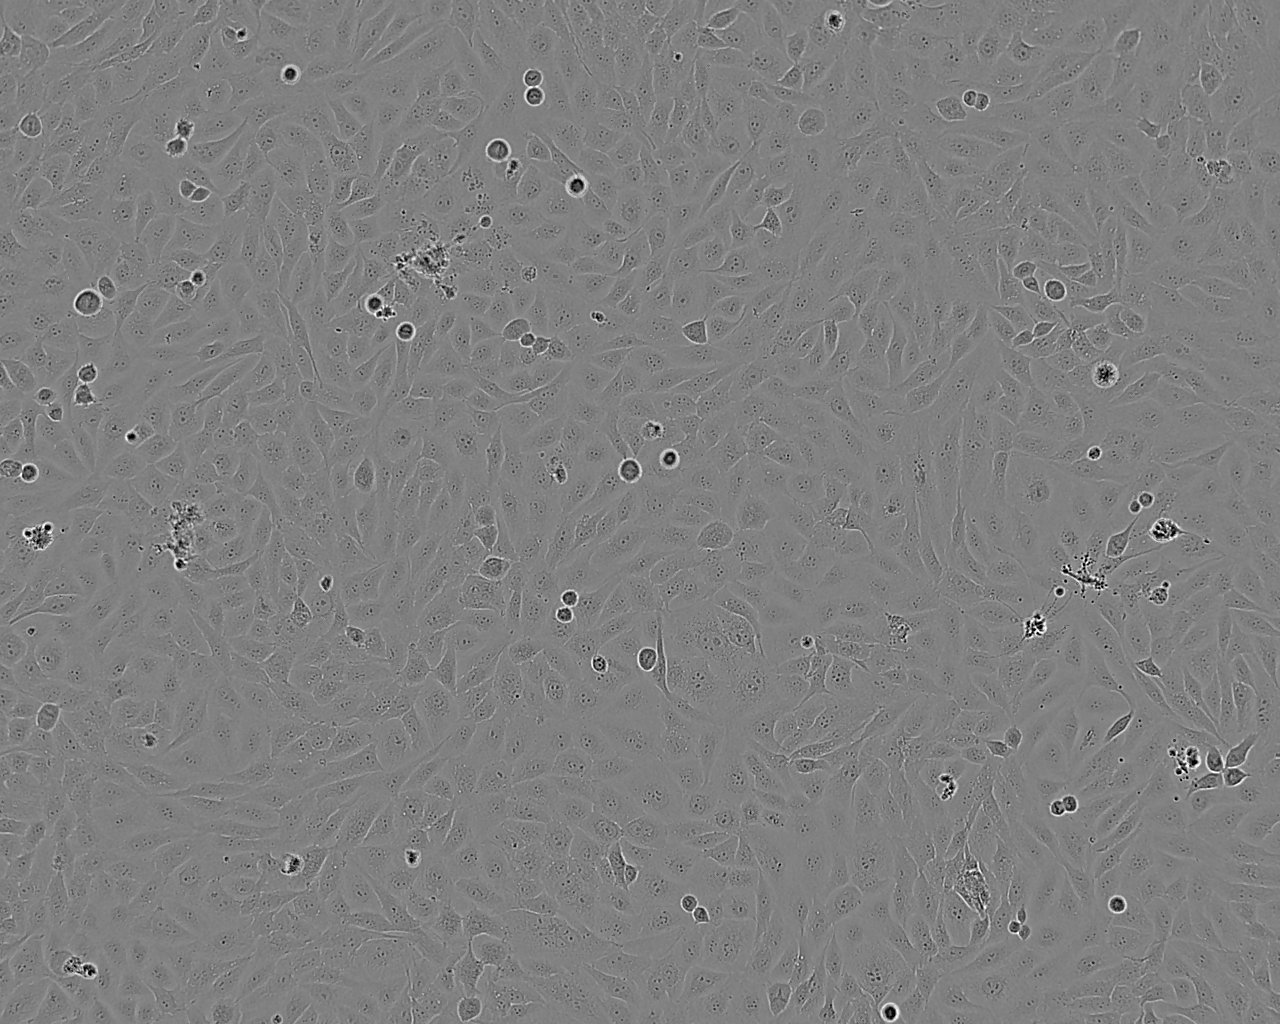 8305C epithelioid cells人类甲状腺未分化癌细胞系,8305C epithelioid cells